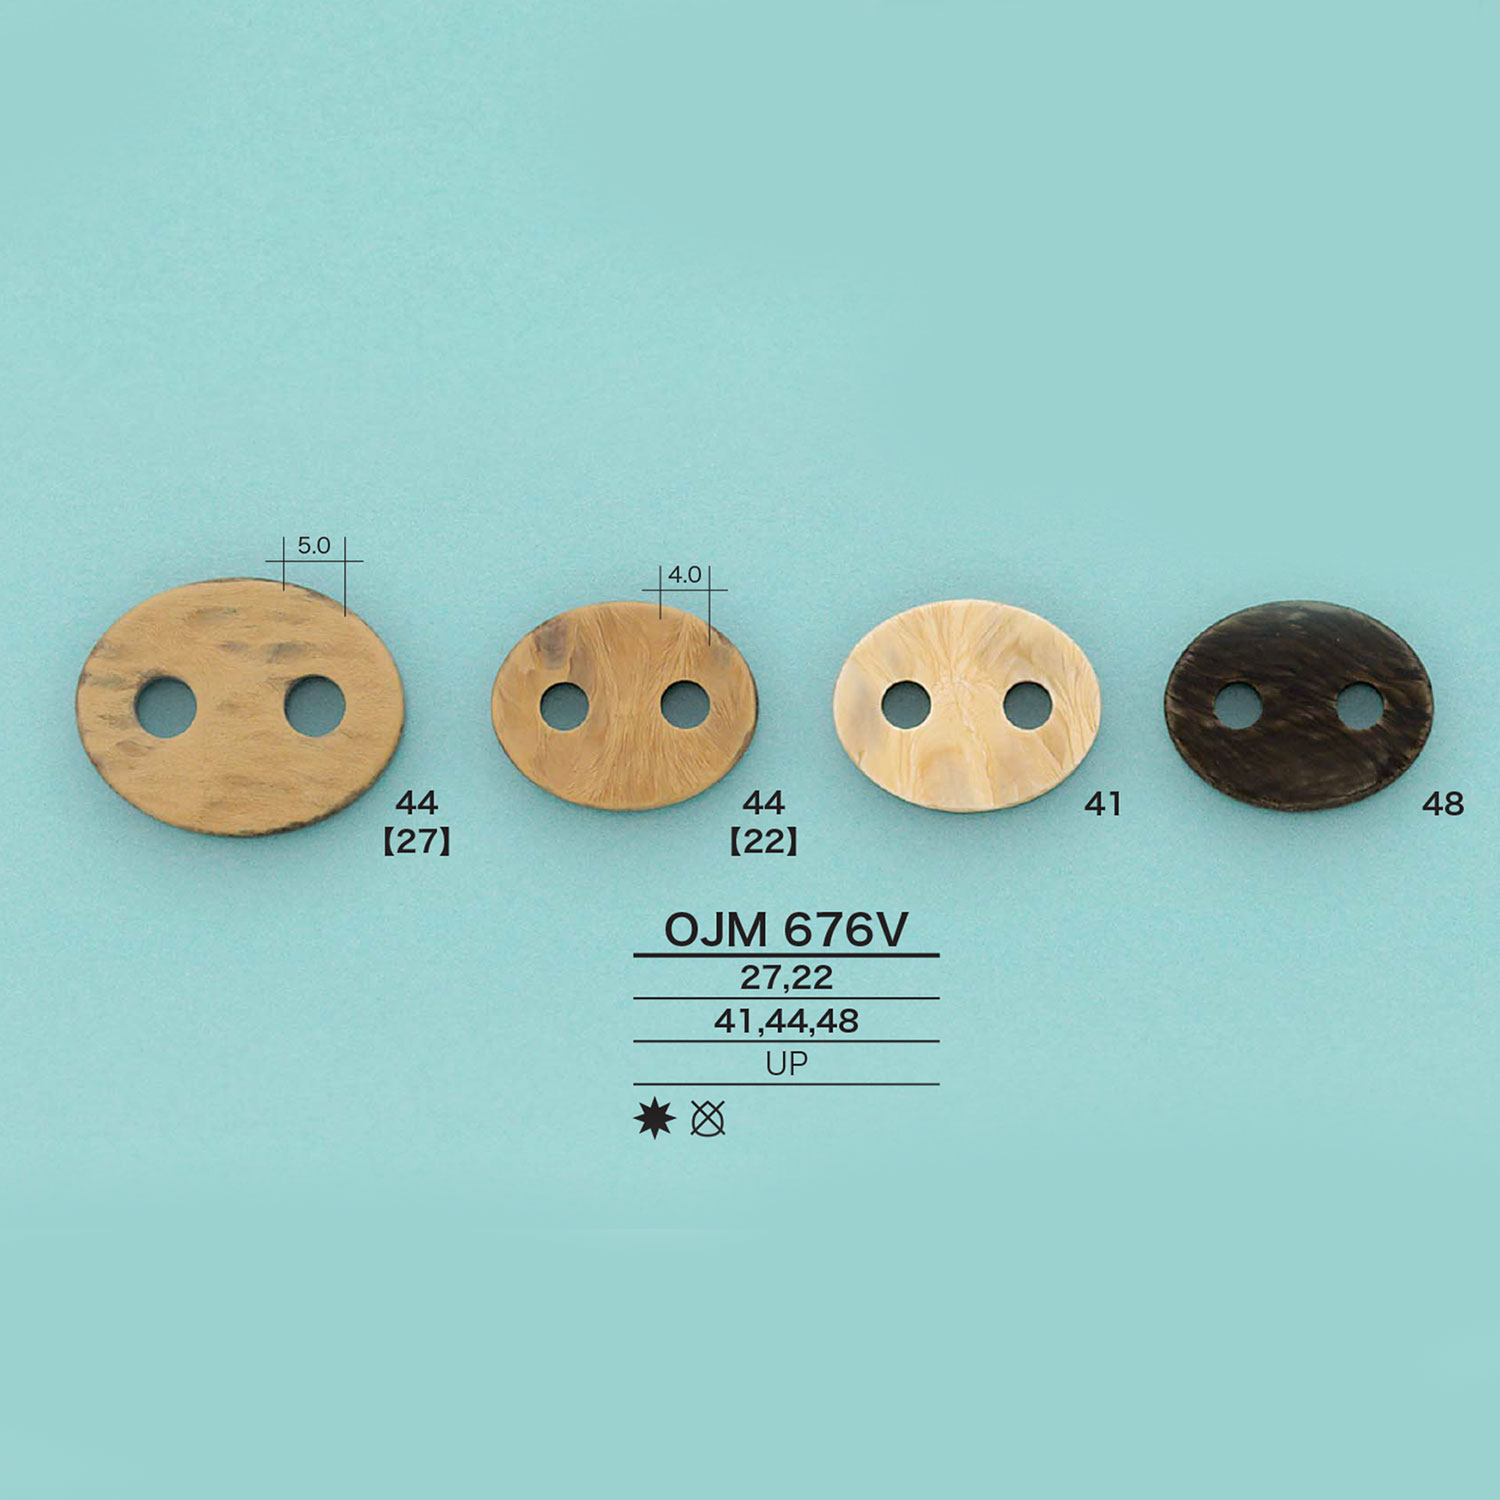 OJM676V 木紋豬鼻塞[扣和環] 愛麗絲鈕扣